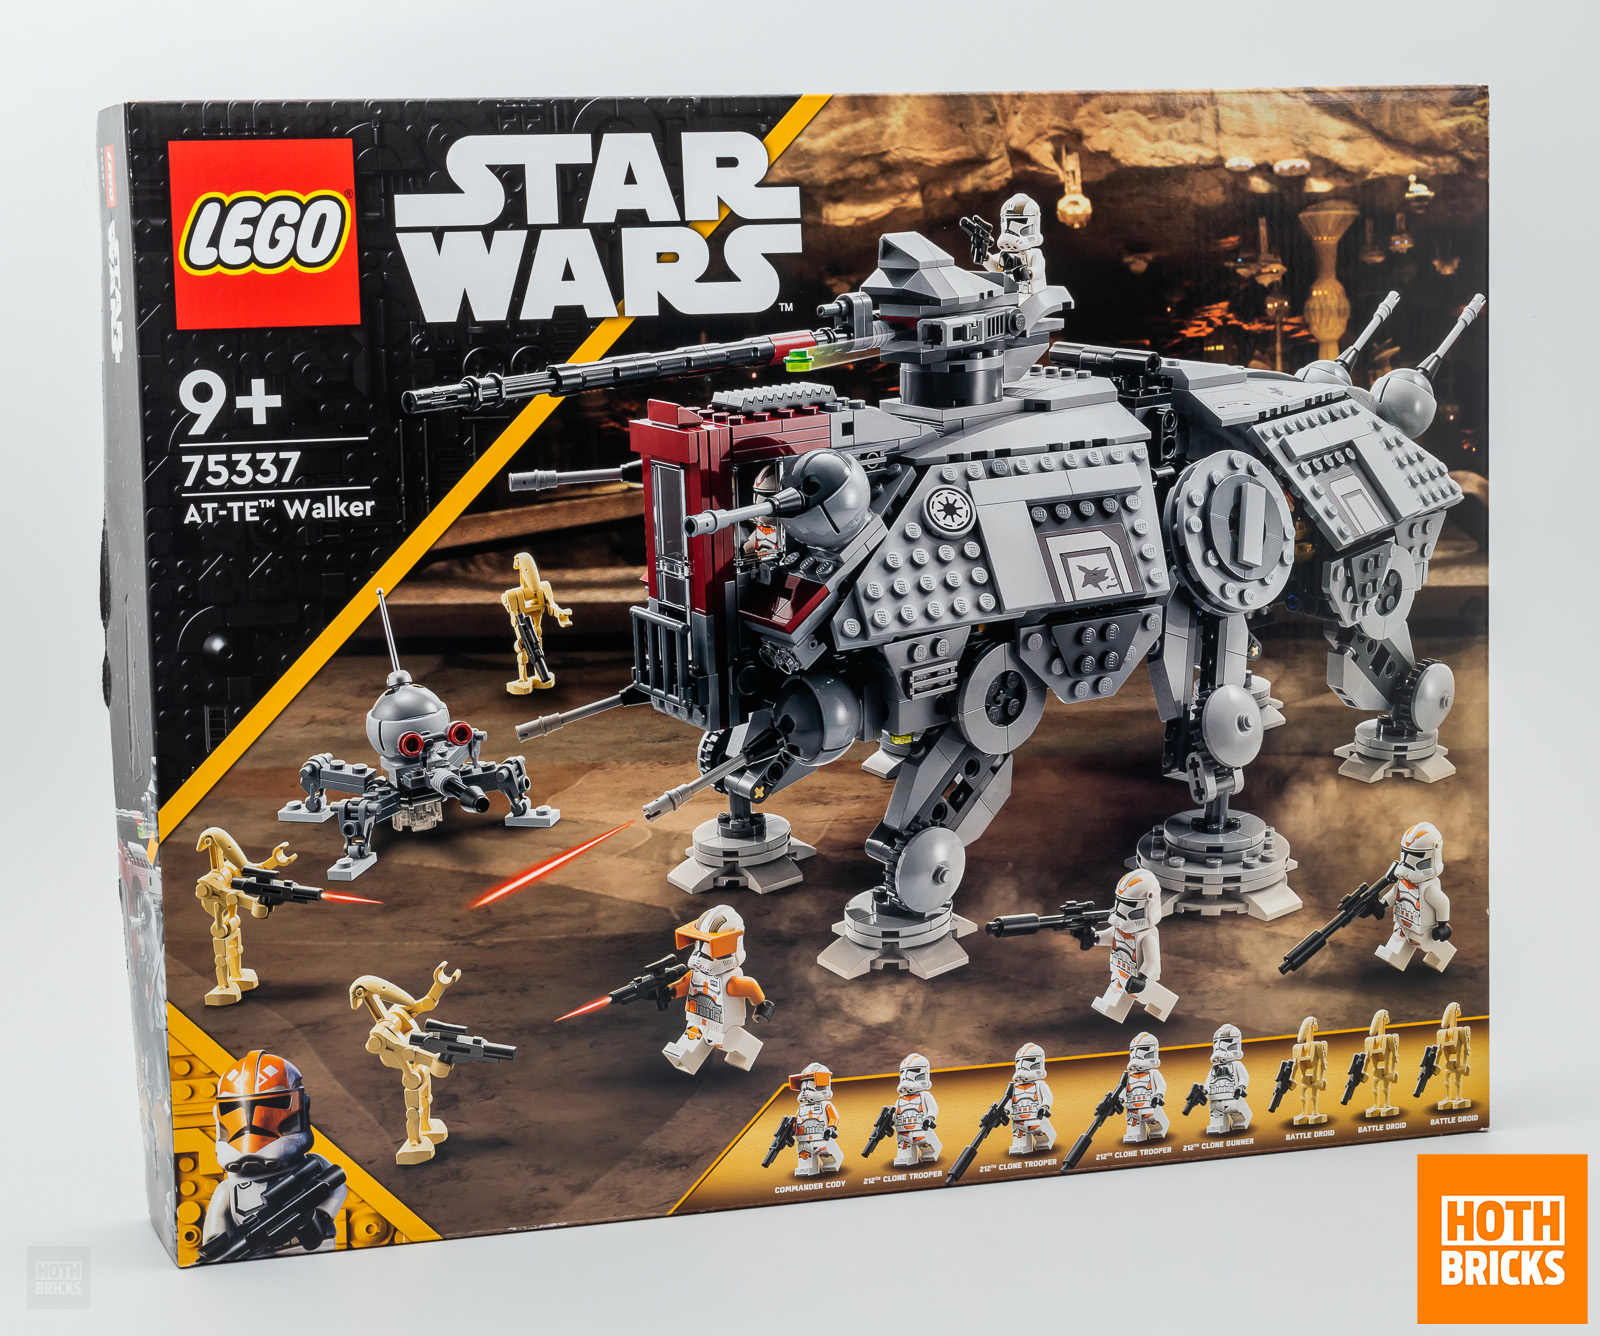 Concours : un exemplaire du set LEGO Star Wars 75337 AT-TE Walker à gagner !